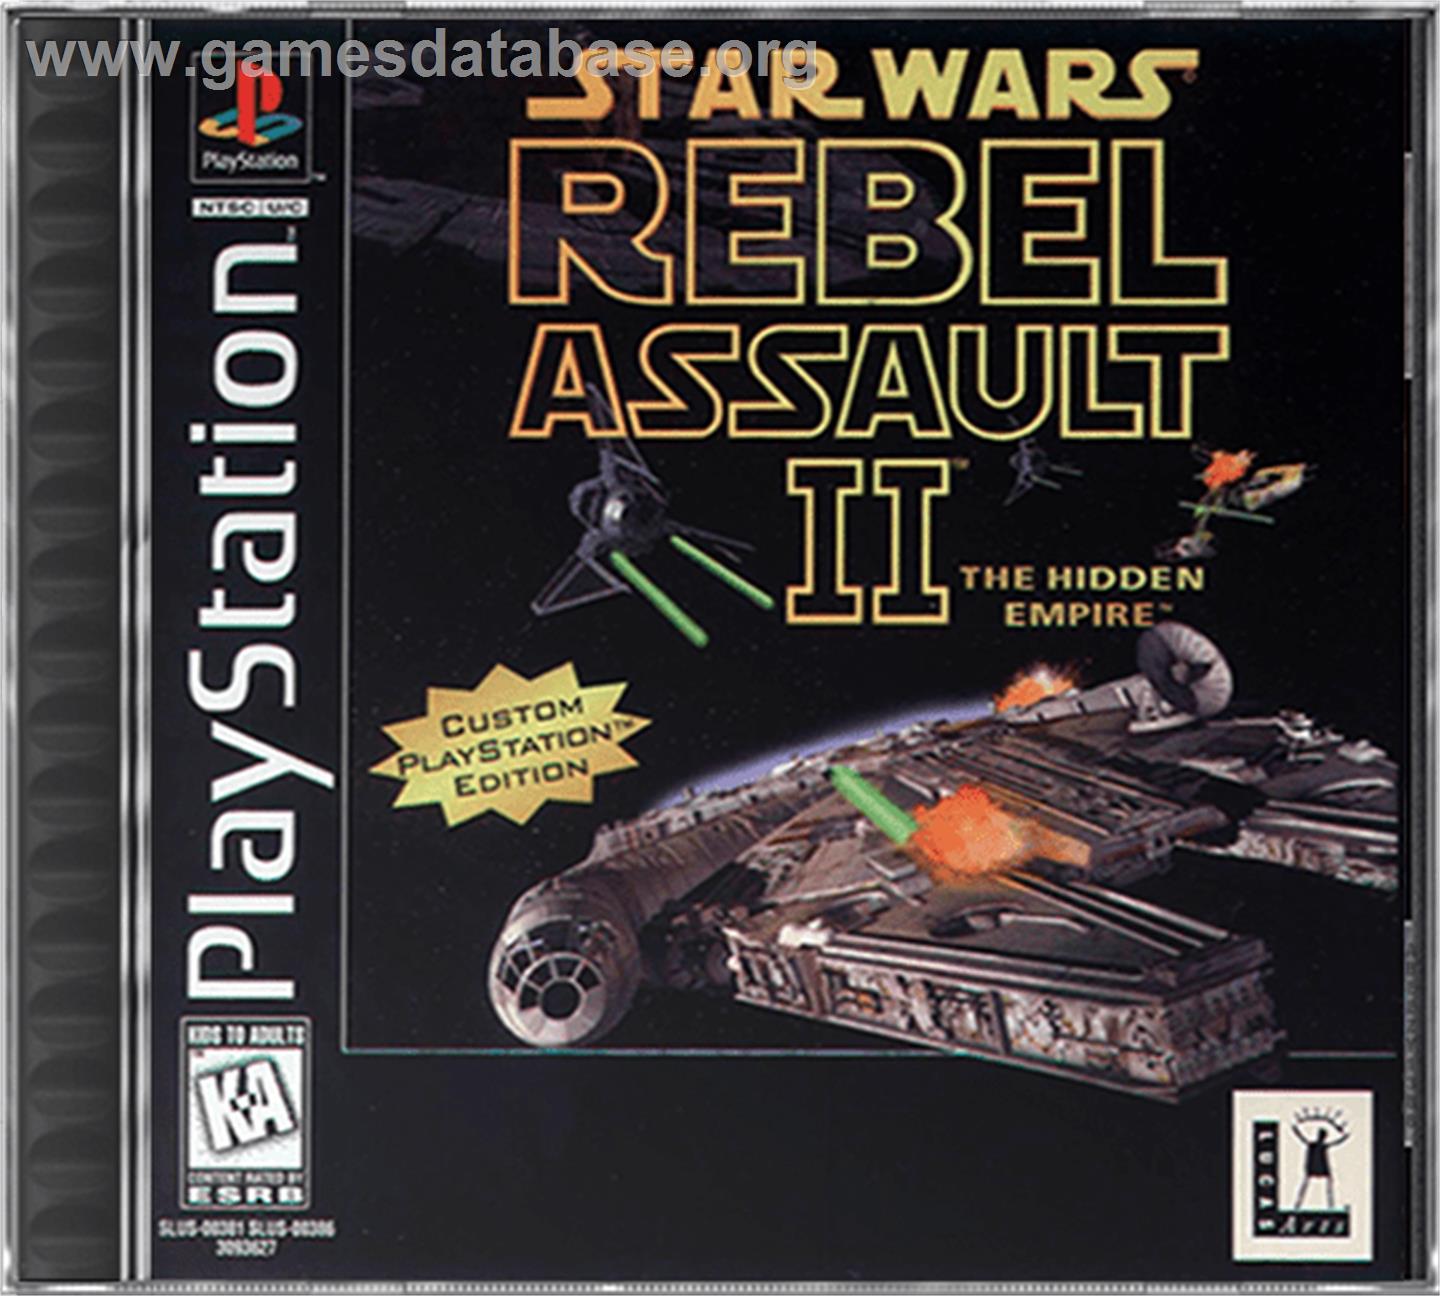 Star Wars: Rebel Assault II - The Hidden Empire - Sony Playstation - Artwork - Box